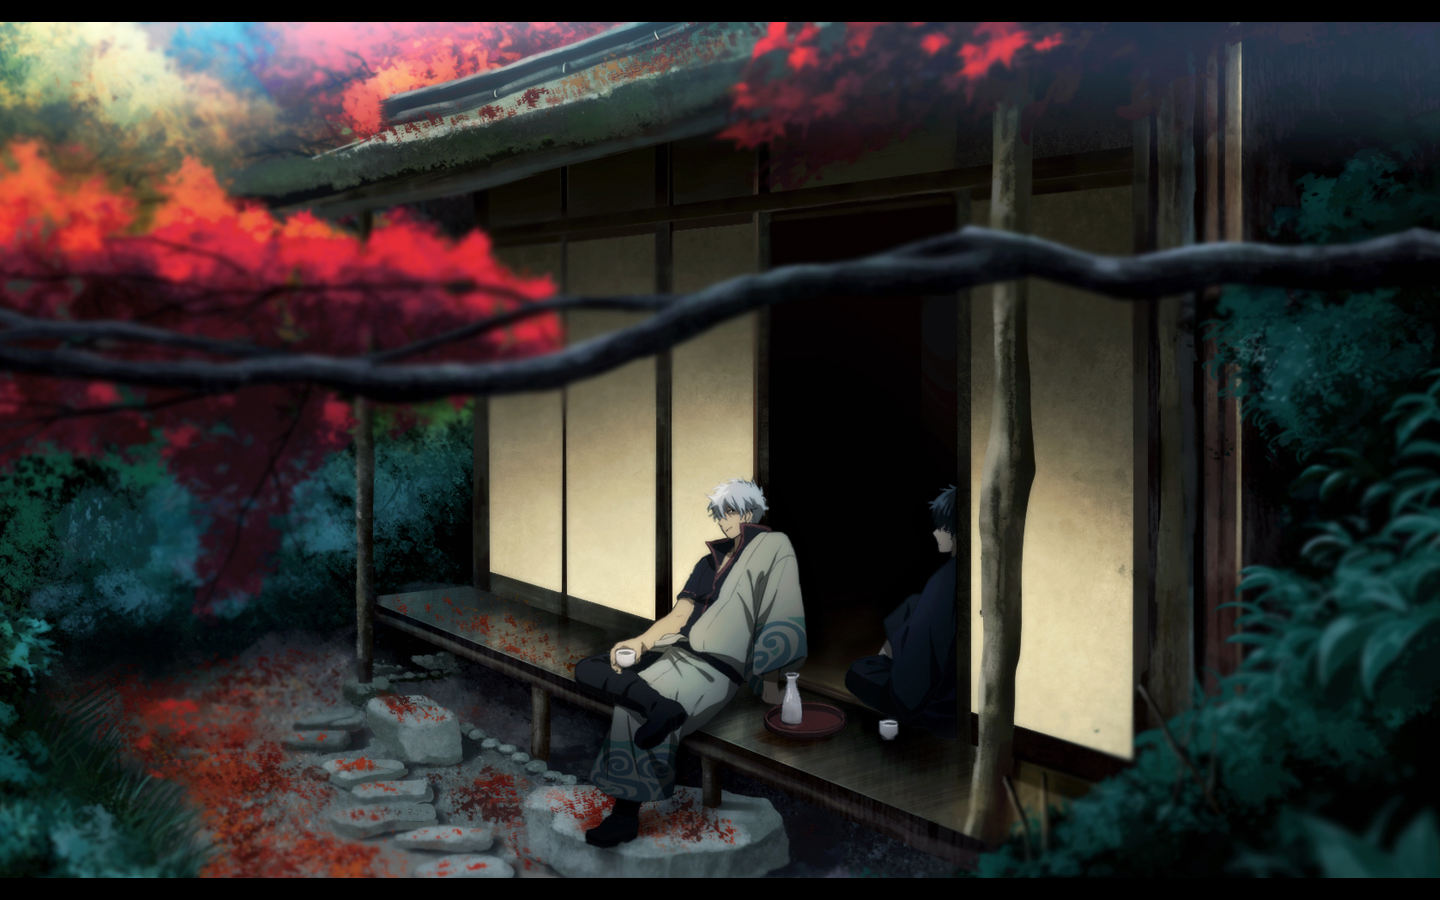 Gintama Sakata Gintoki Anime Anime Boys 1440x900